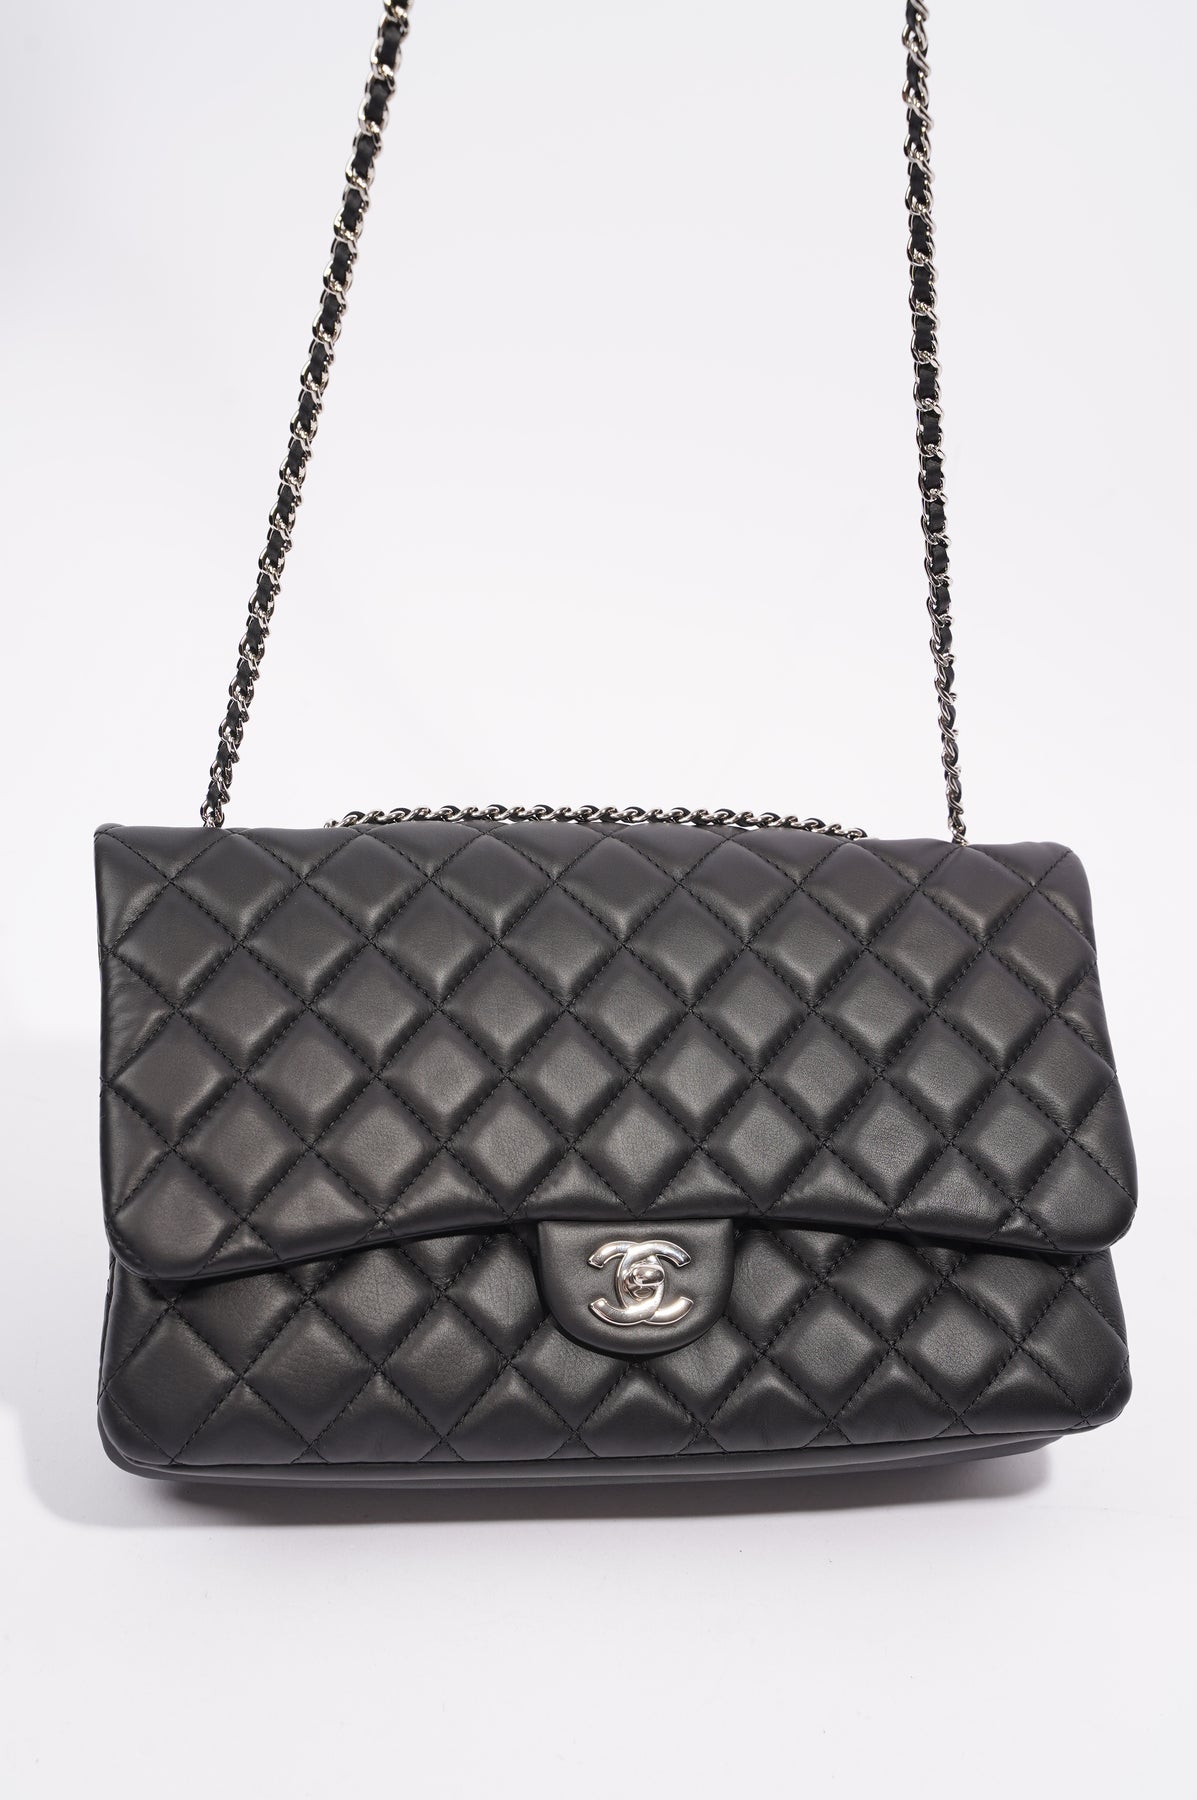 authentic chanel classic flap bag black